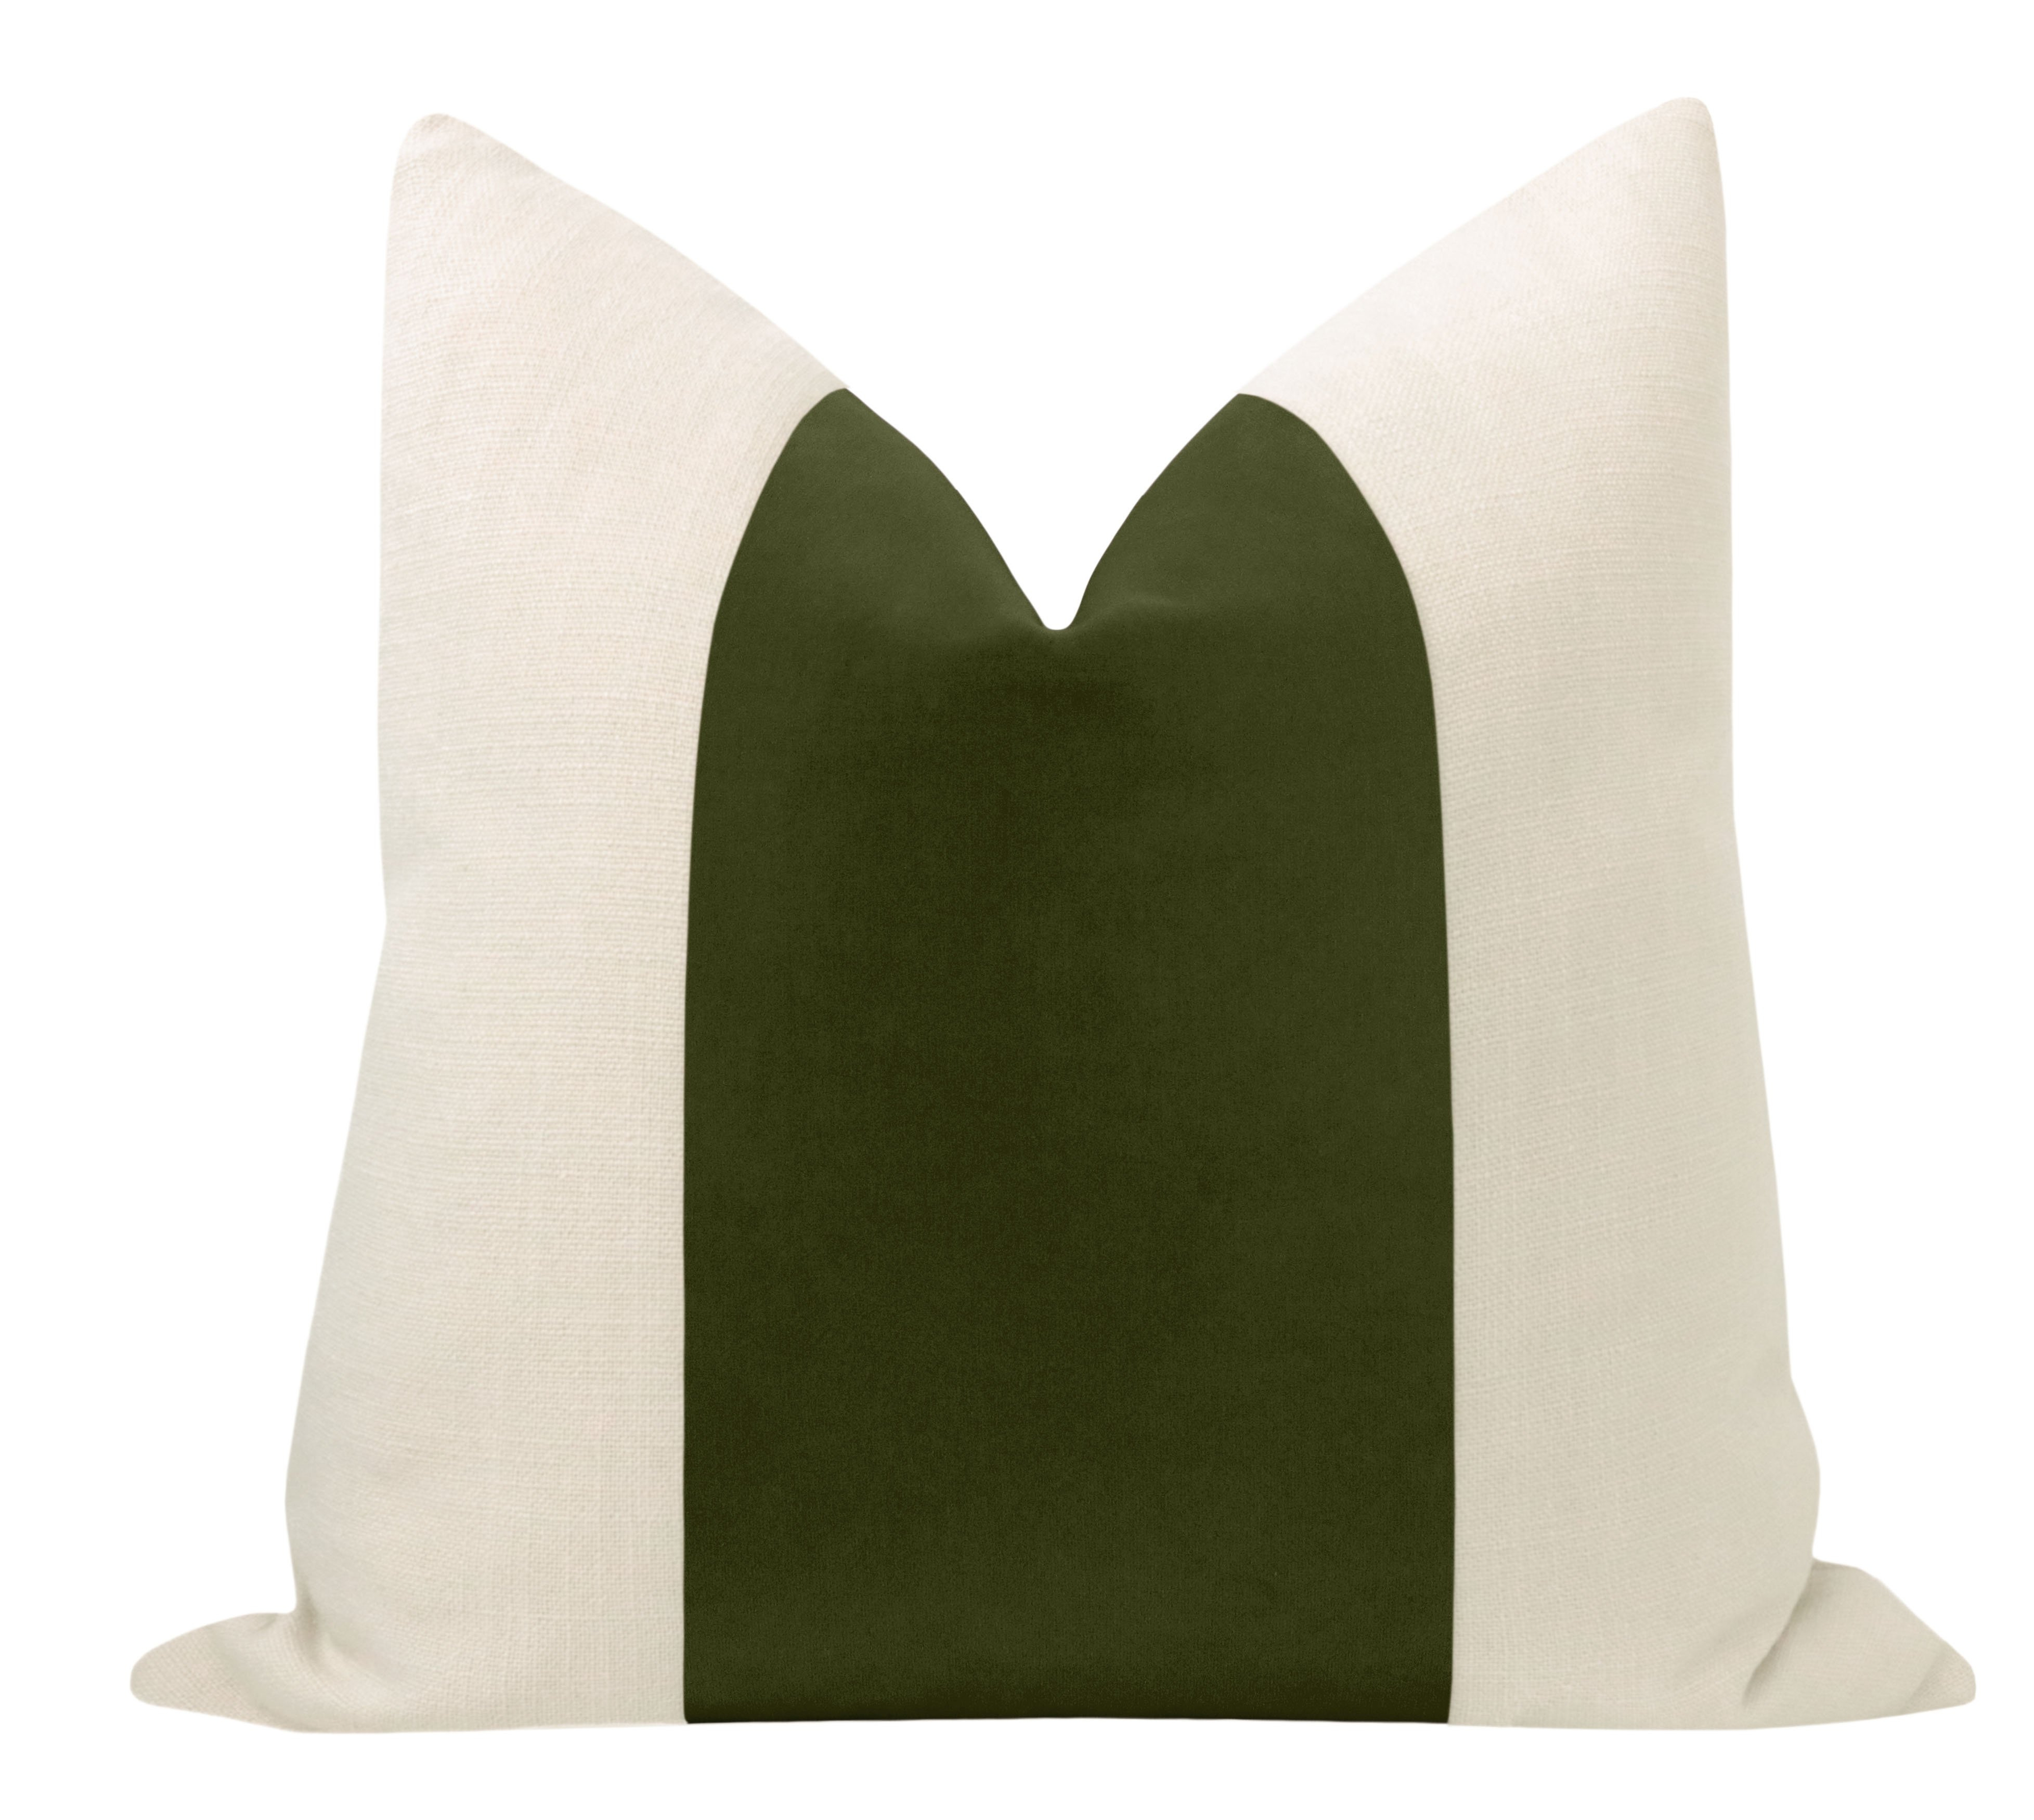 Panel Studio Velvet Pillow Cover, Olive, 20" x 20" - Little Design Company